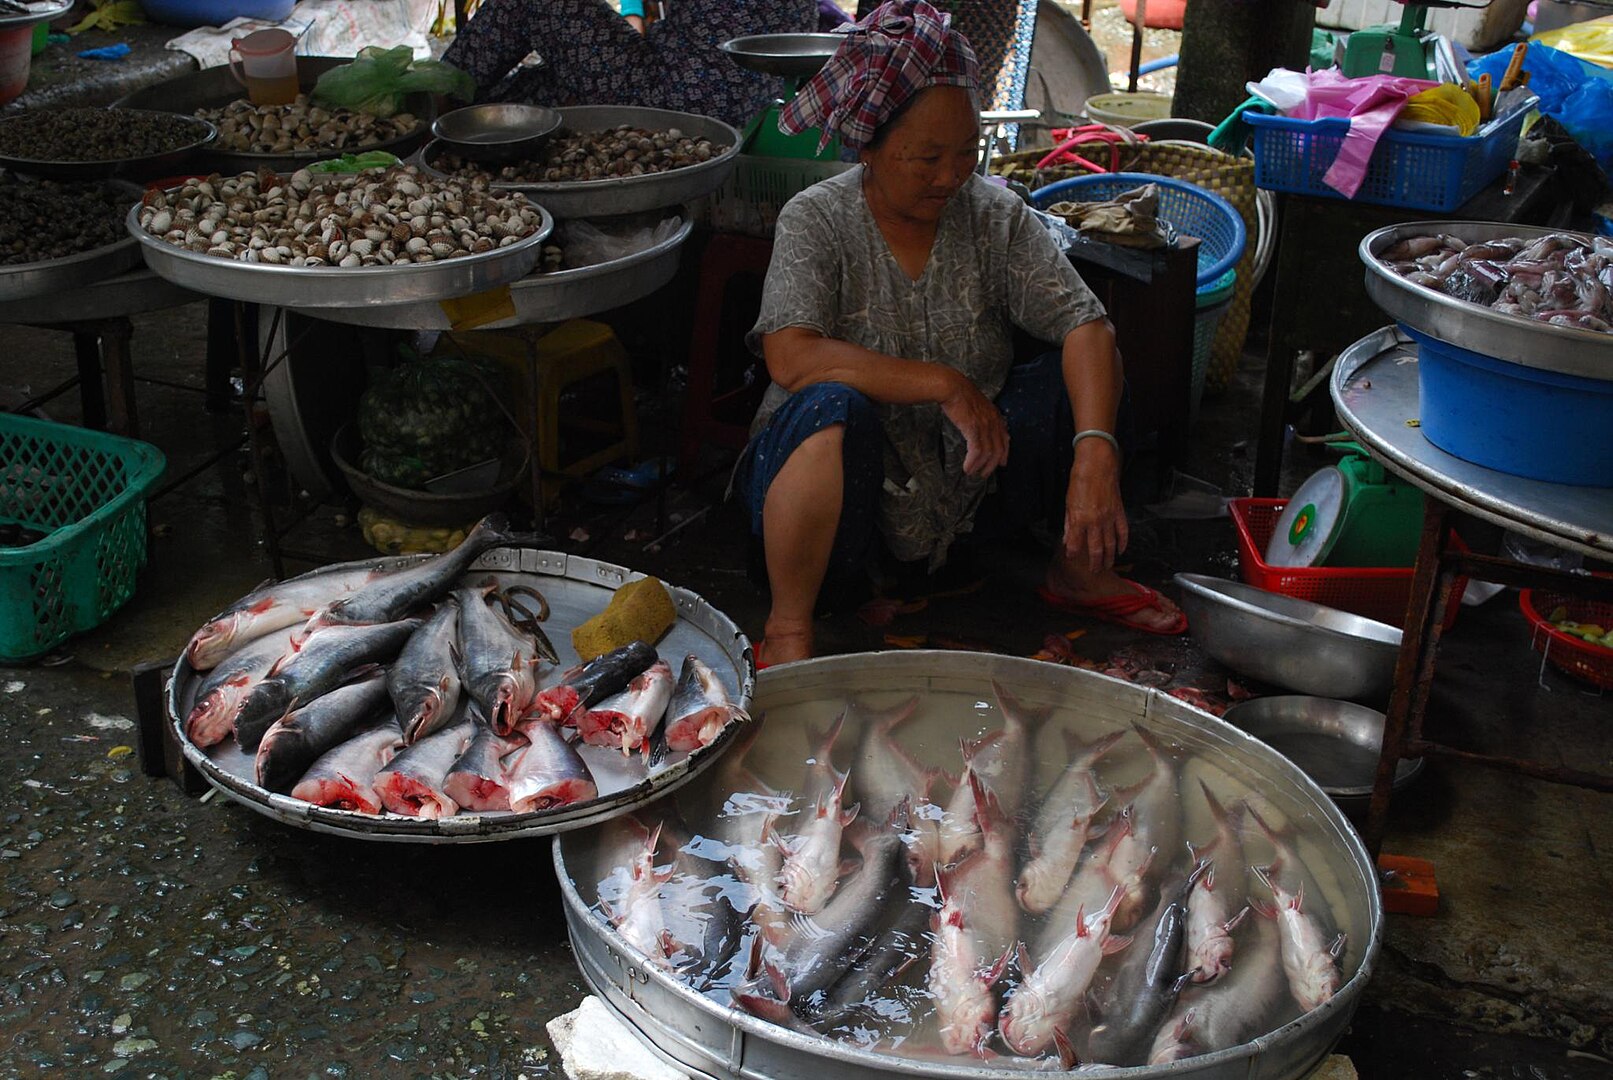 Image Credit: Alpha - Flickr: Basa fish - Vinh Long Market, CC BY-SA 2.0, 